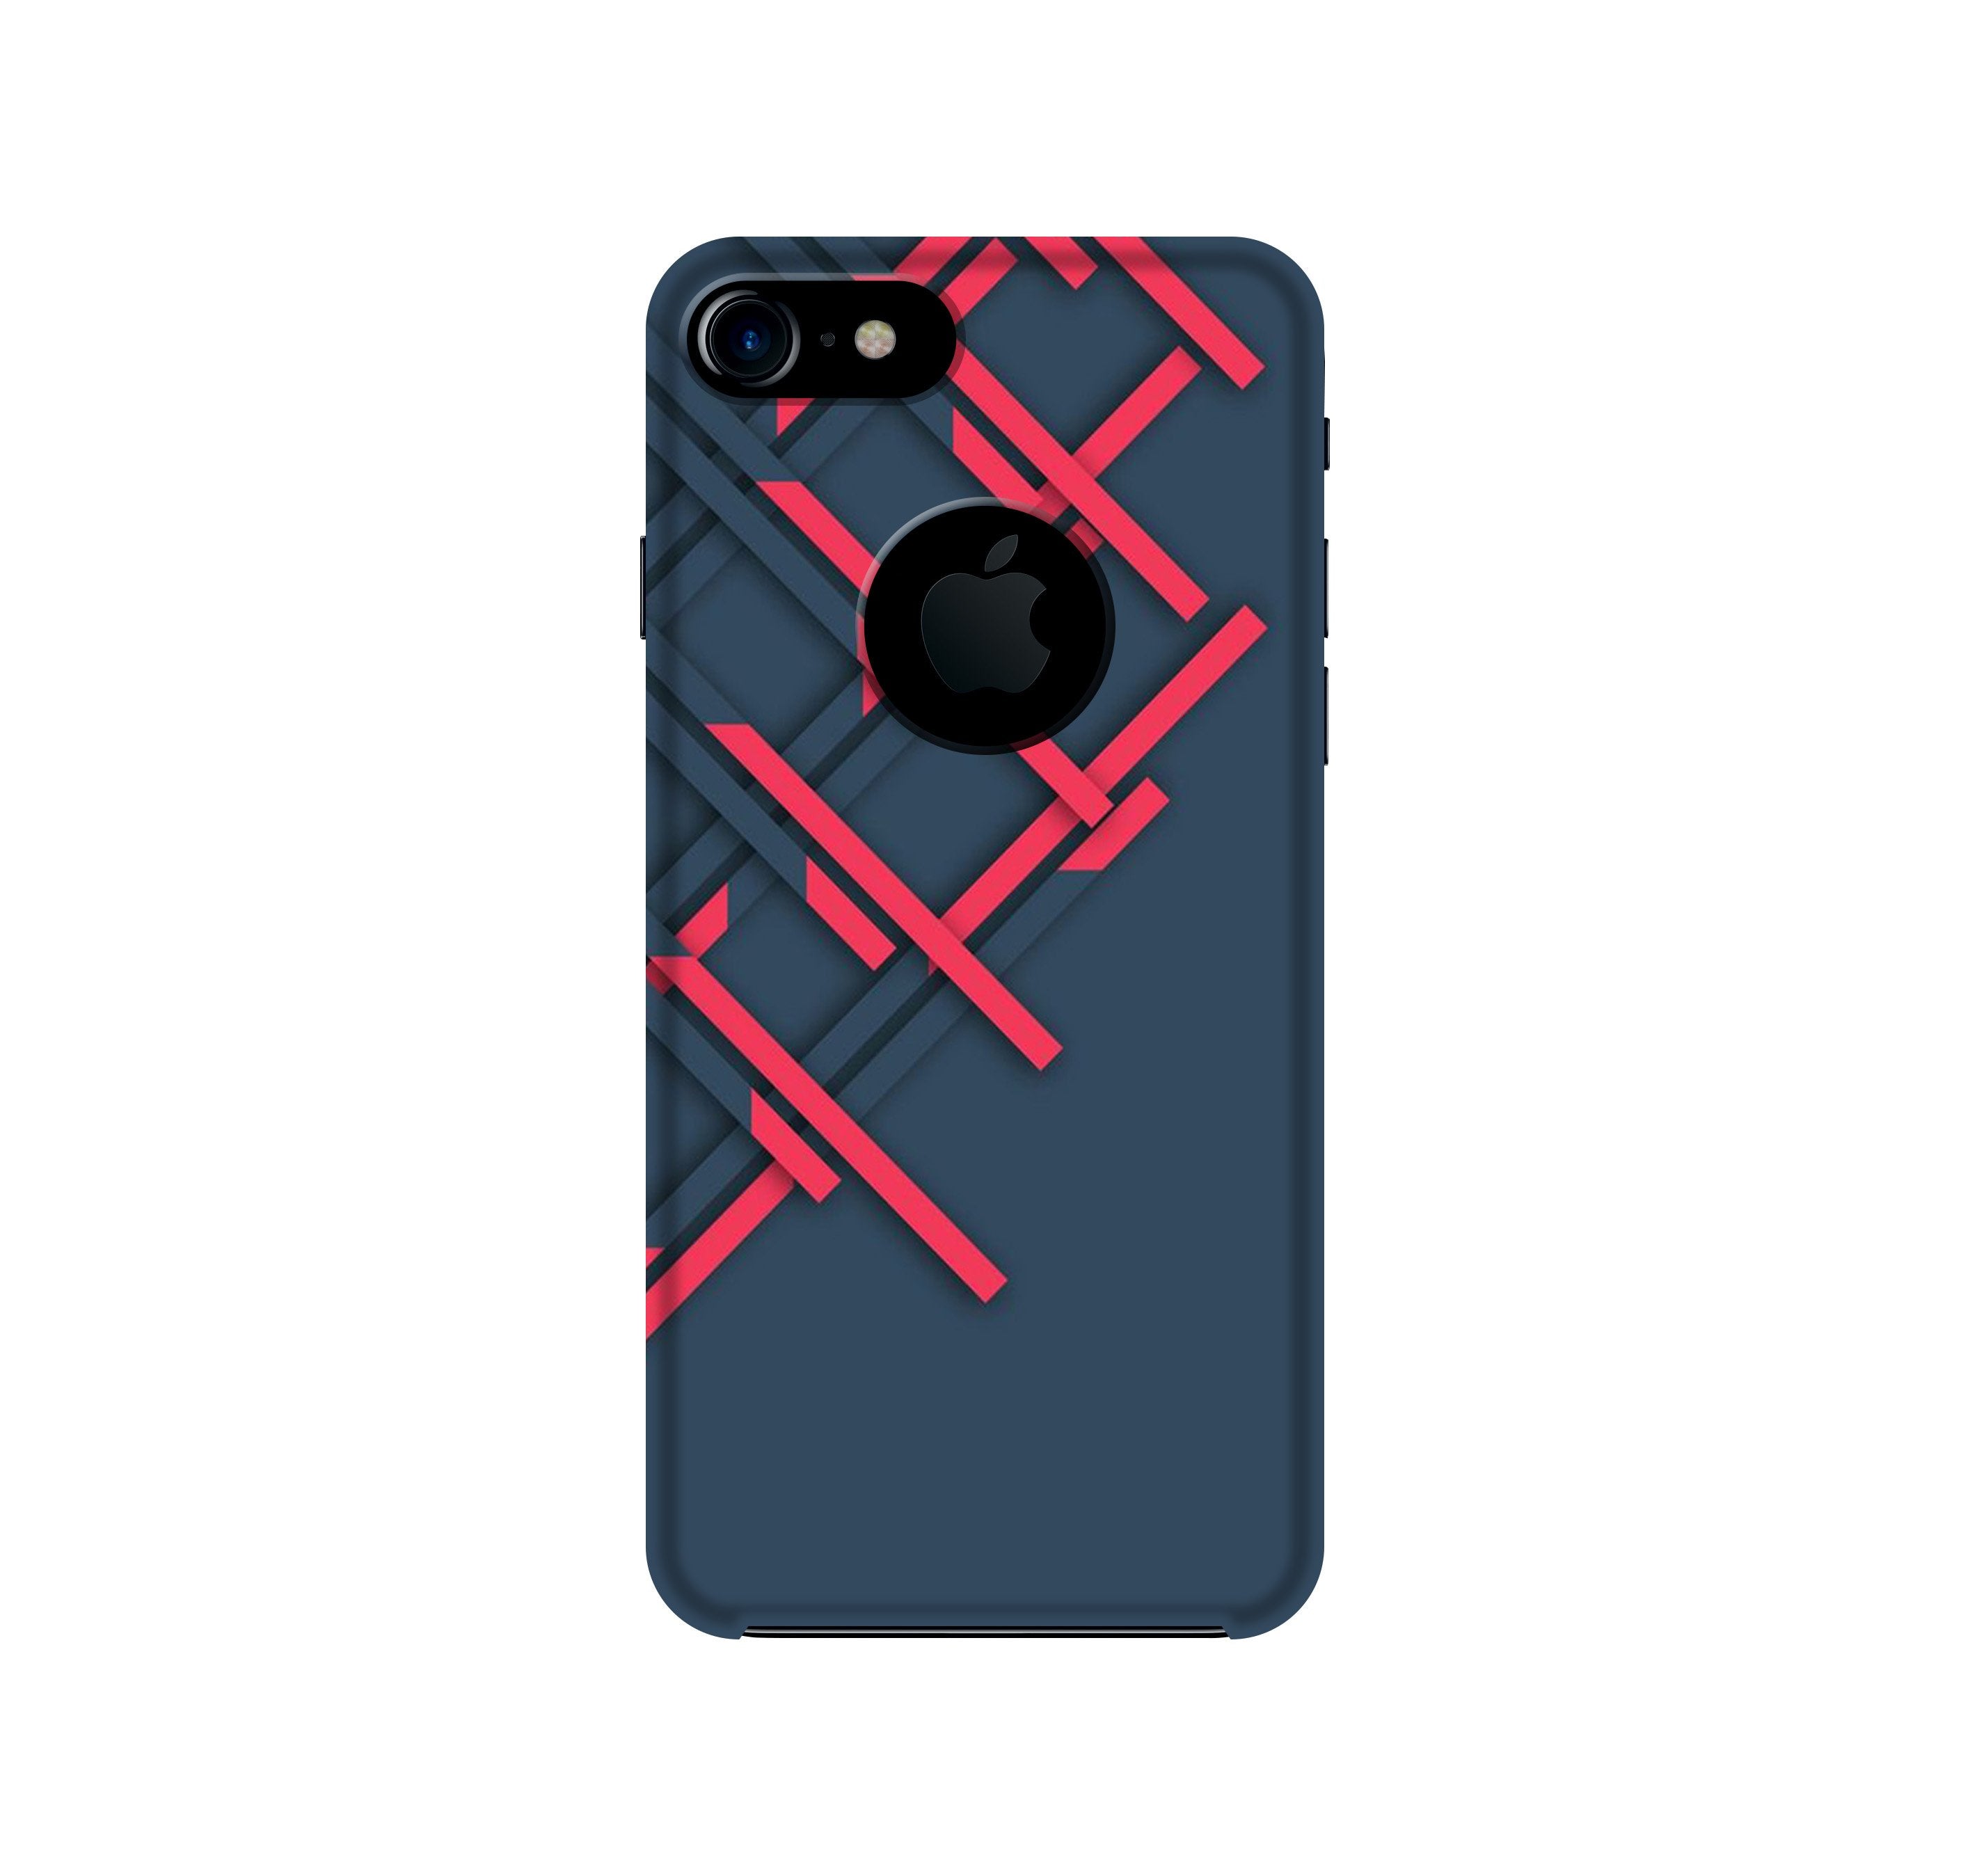 Designer Case for iPhone 7 logo cut (Design No. 285)